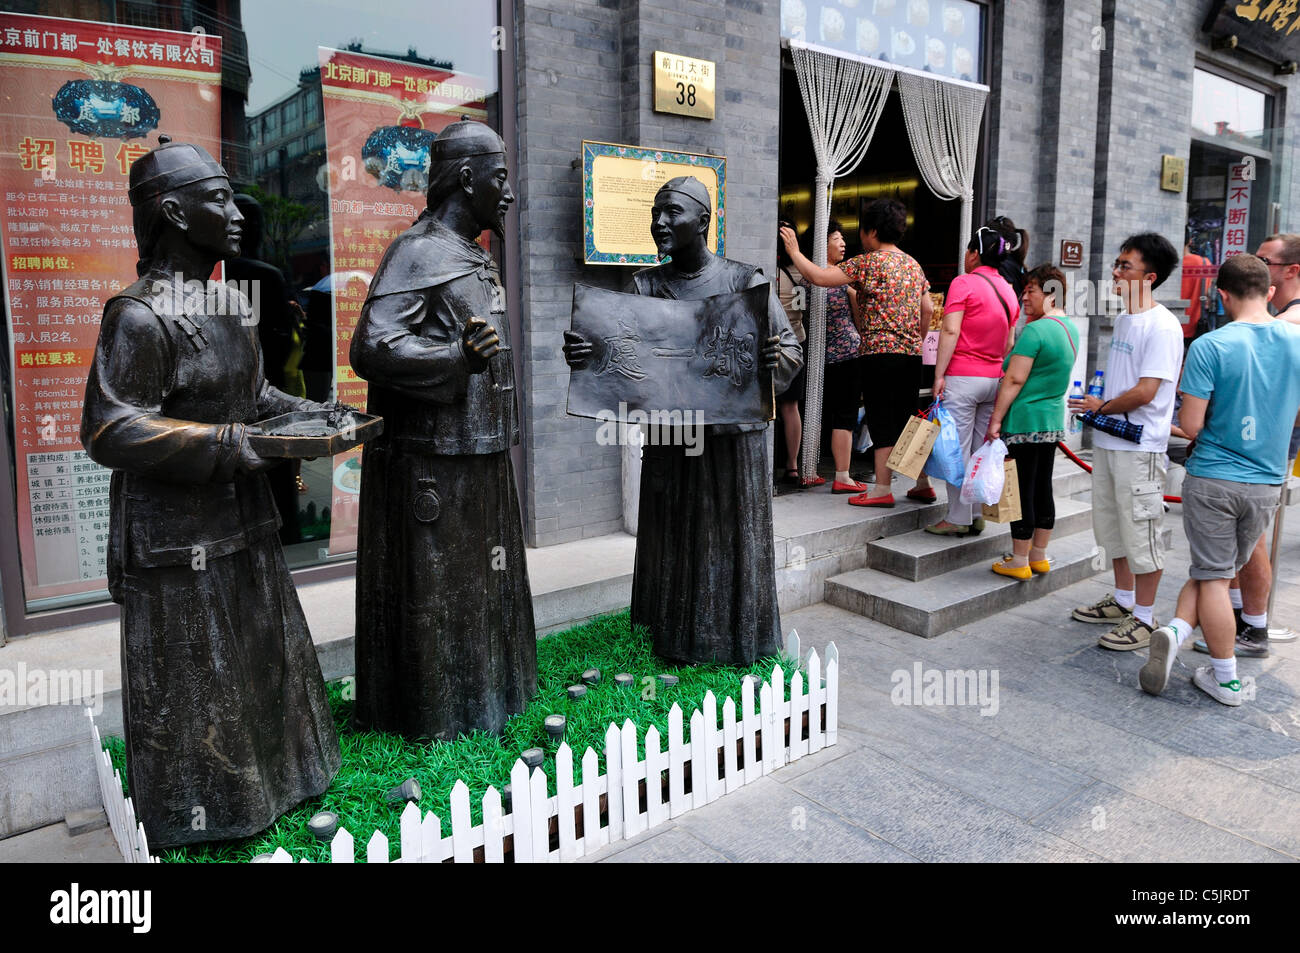 Menschen warten auf Linie zu bekommen in einem bekannten Restaurant. Peking, China. Stockfoto